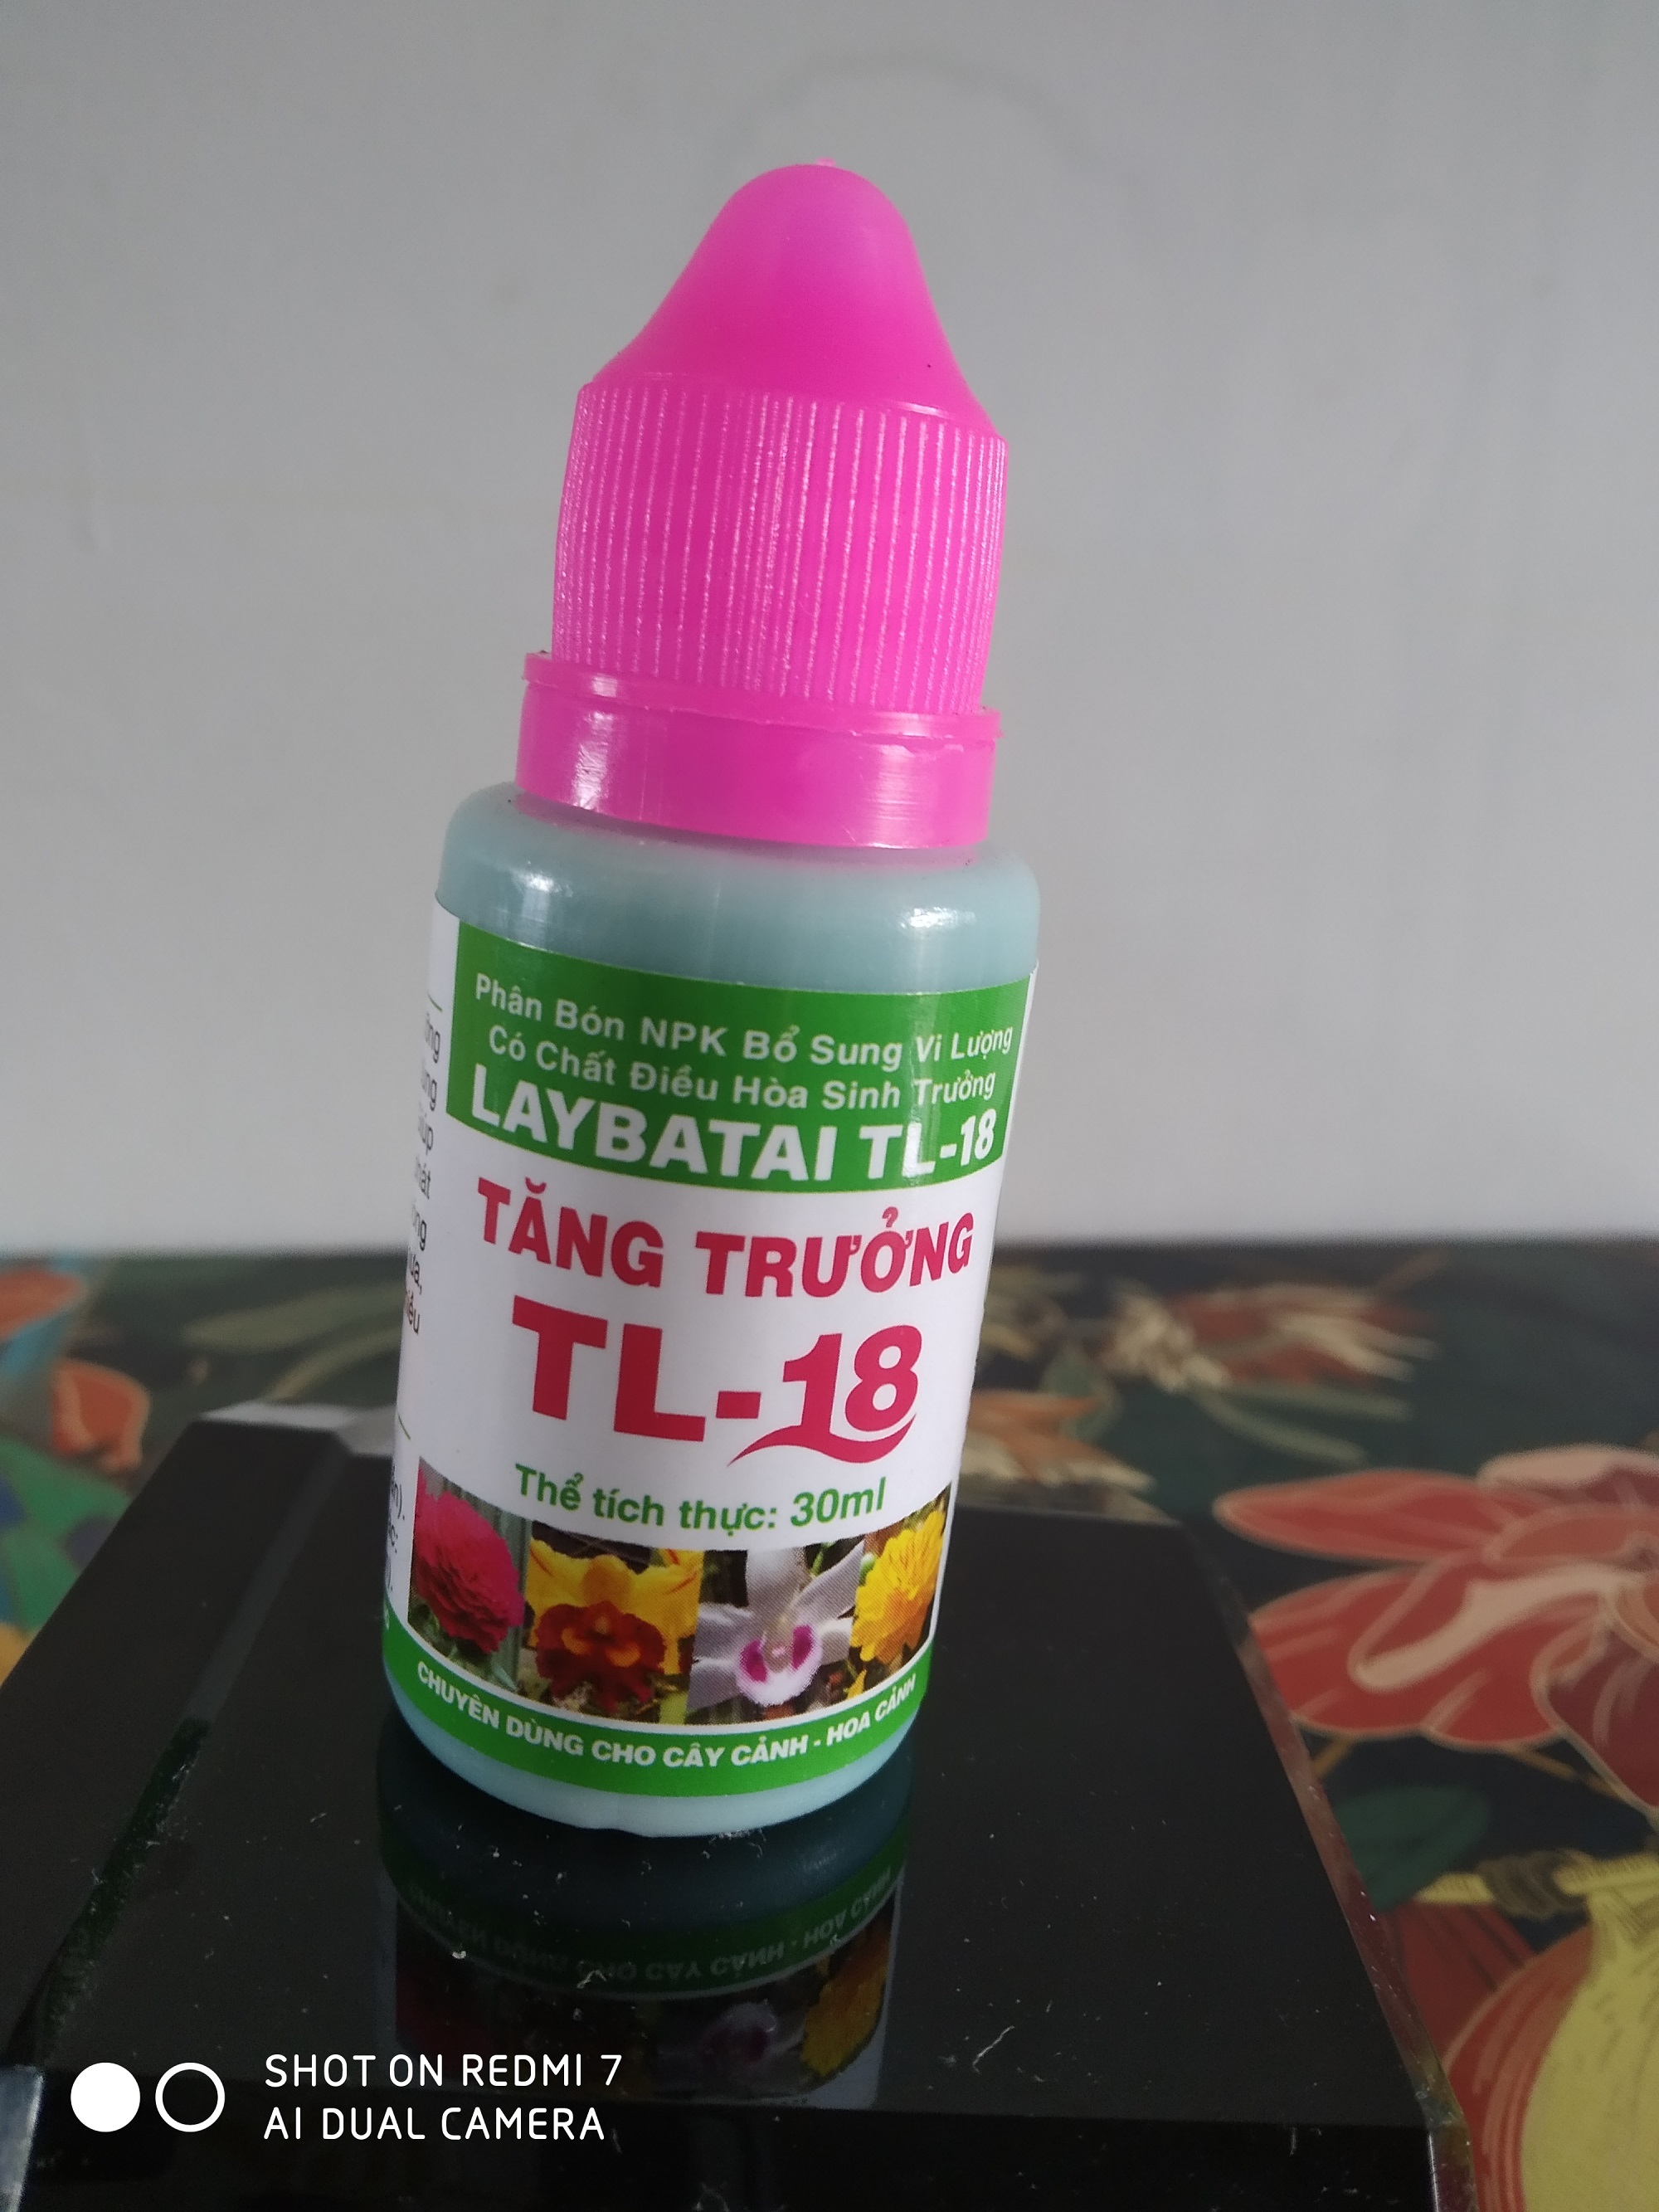 Phân bón NPK bổ sung vi lượng có chất điều hòa sinh trưởng LAYBATAI TL-18 - Chai 30 ml